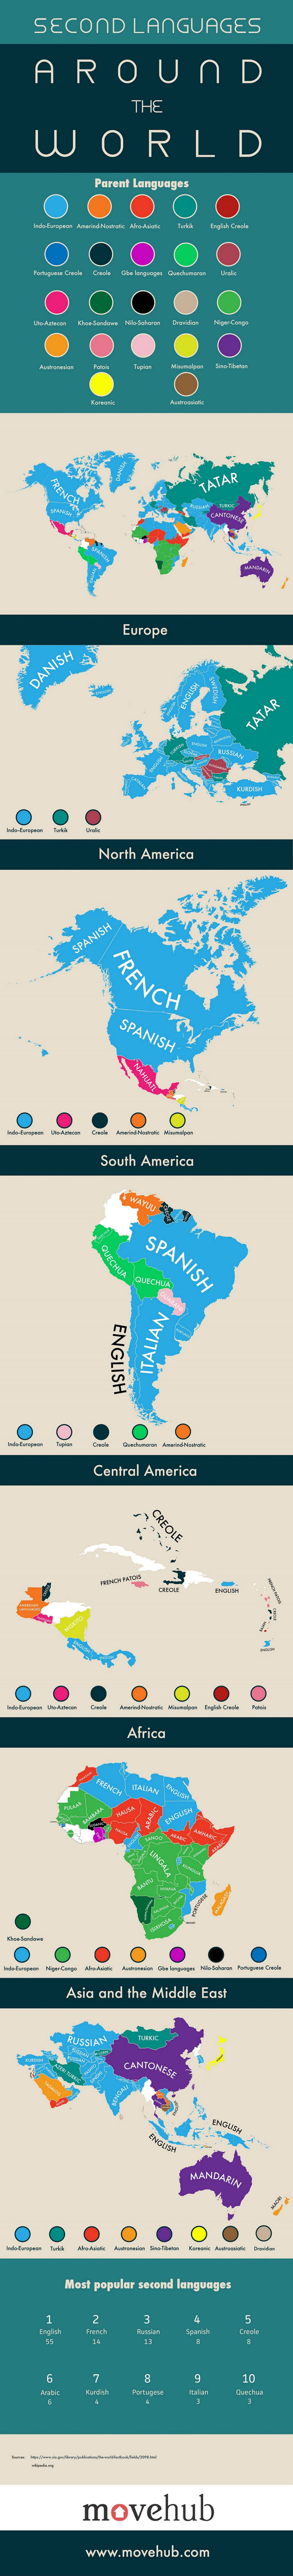 اینفوگرافی: زبان دوم کشورهای مختلف جهان چیست؟